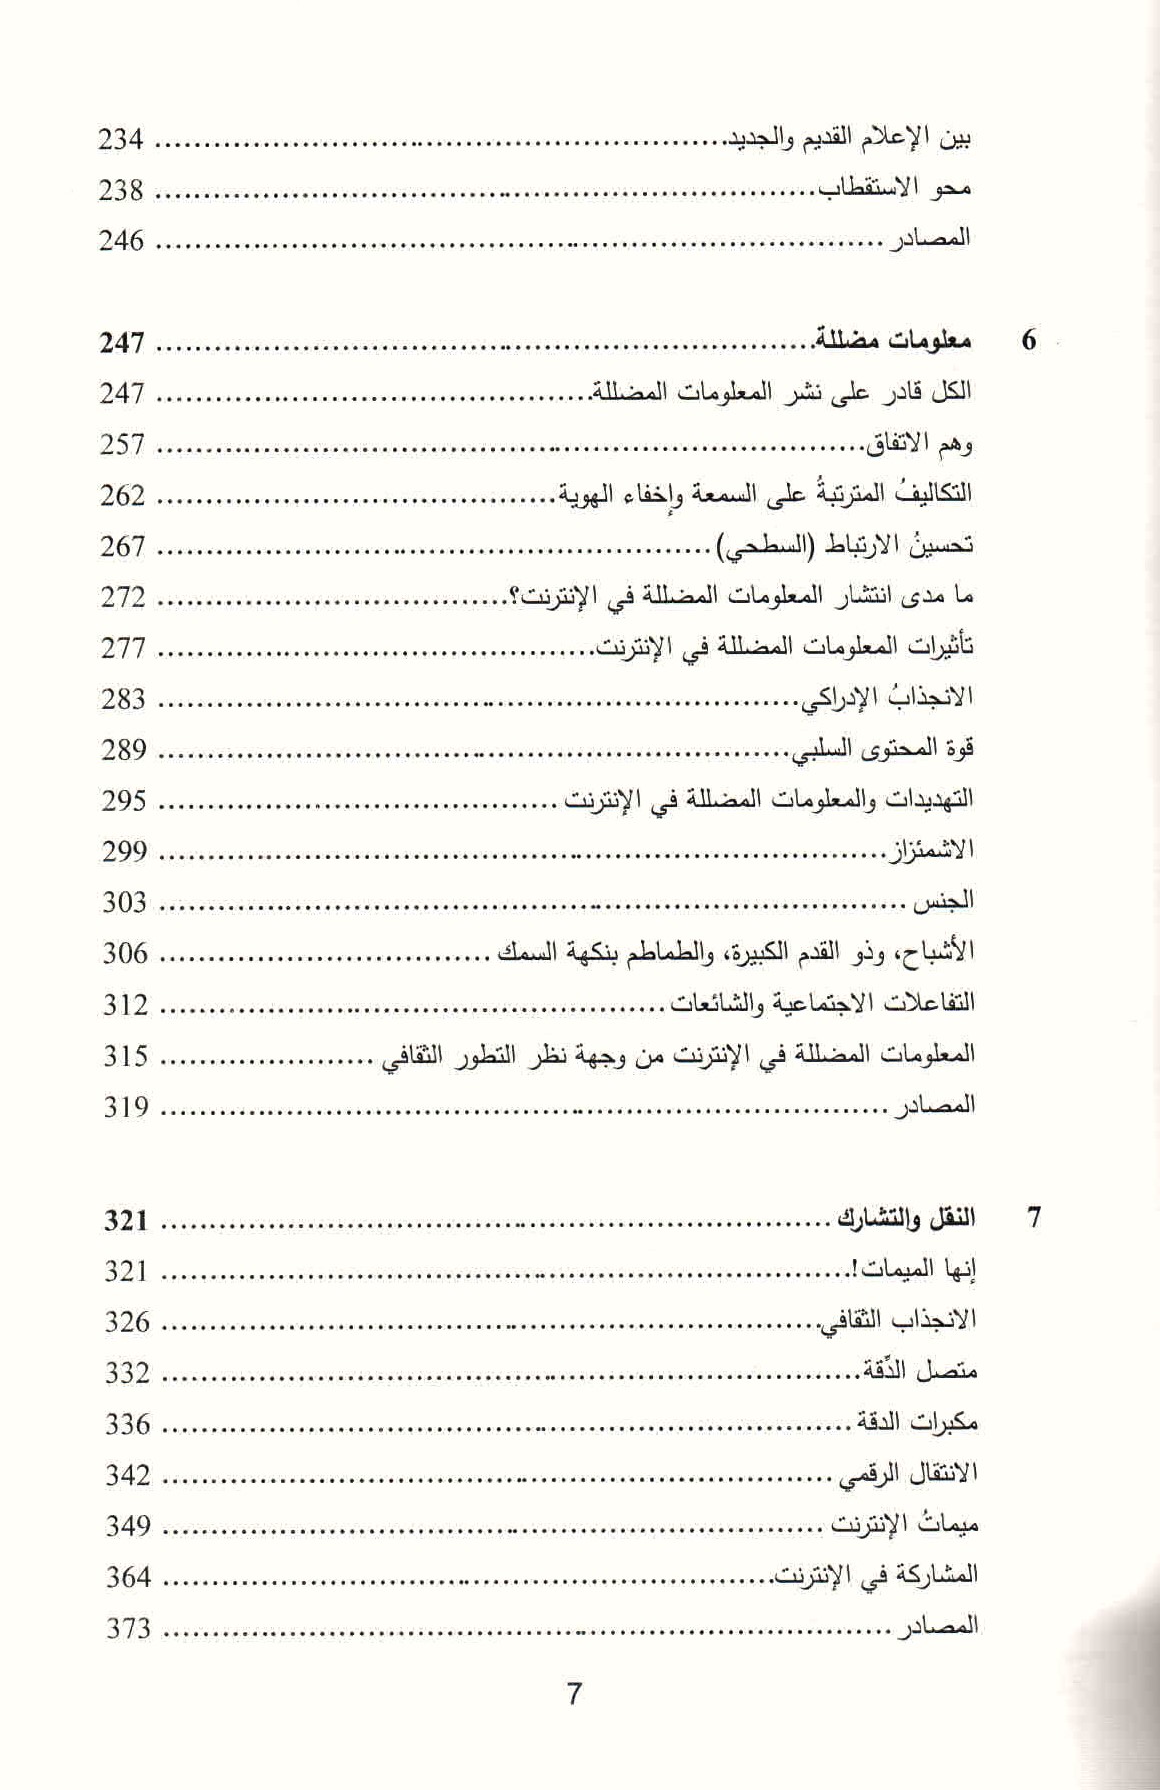 قائمة محتويات كتاب التطور الثفافي في العصر الرقمي ص. 7